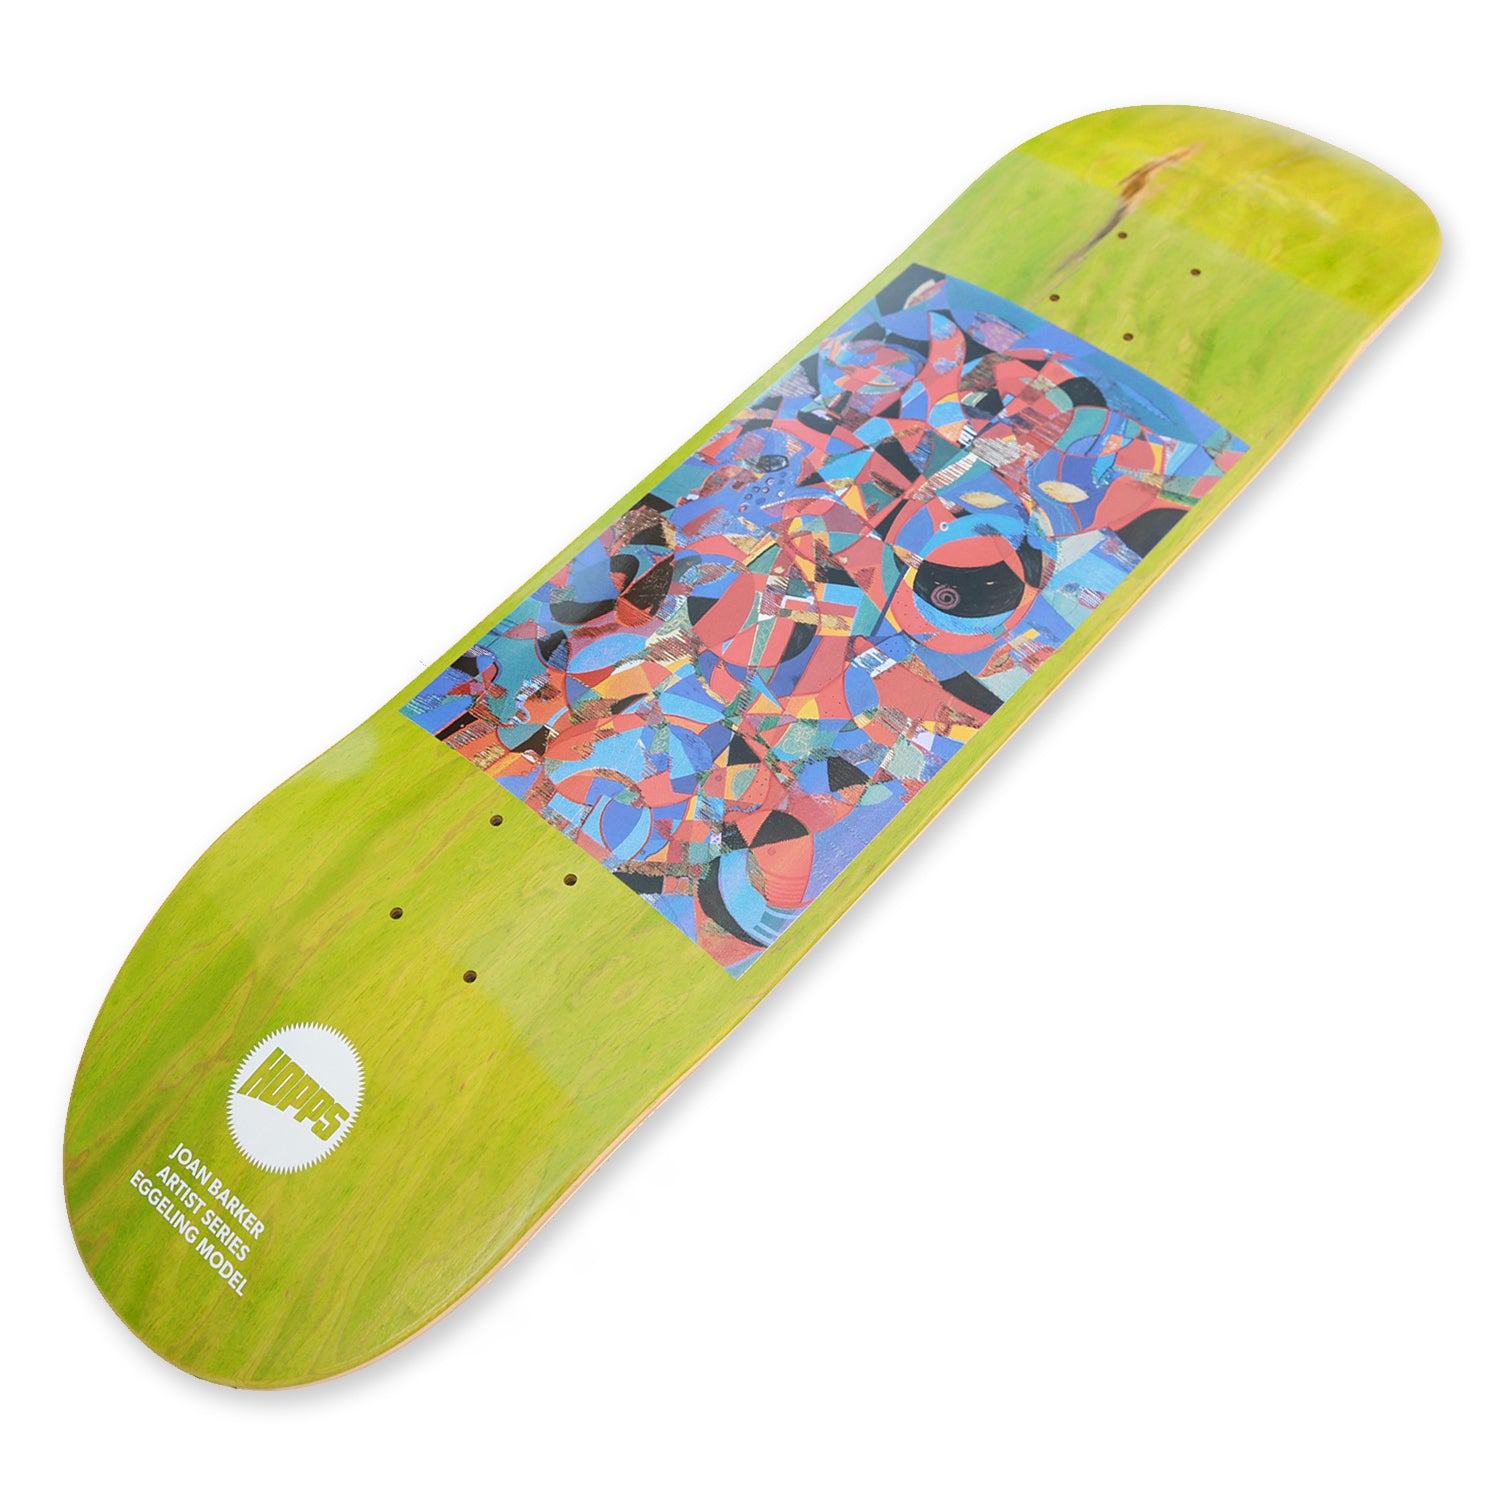 Hopps Skateboards Barker Abstract Series Skateboard Deck